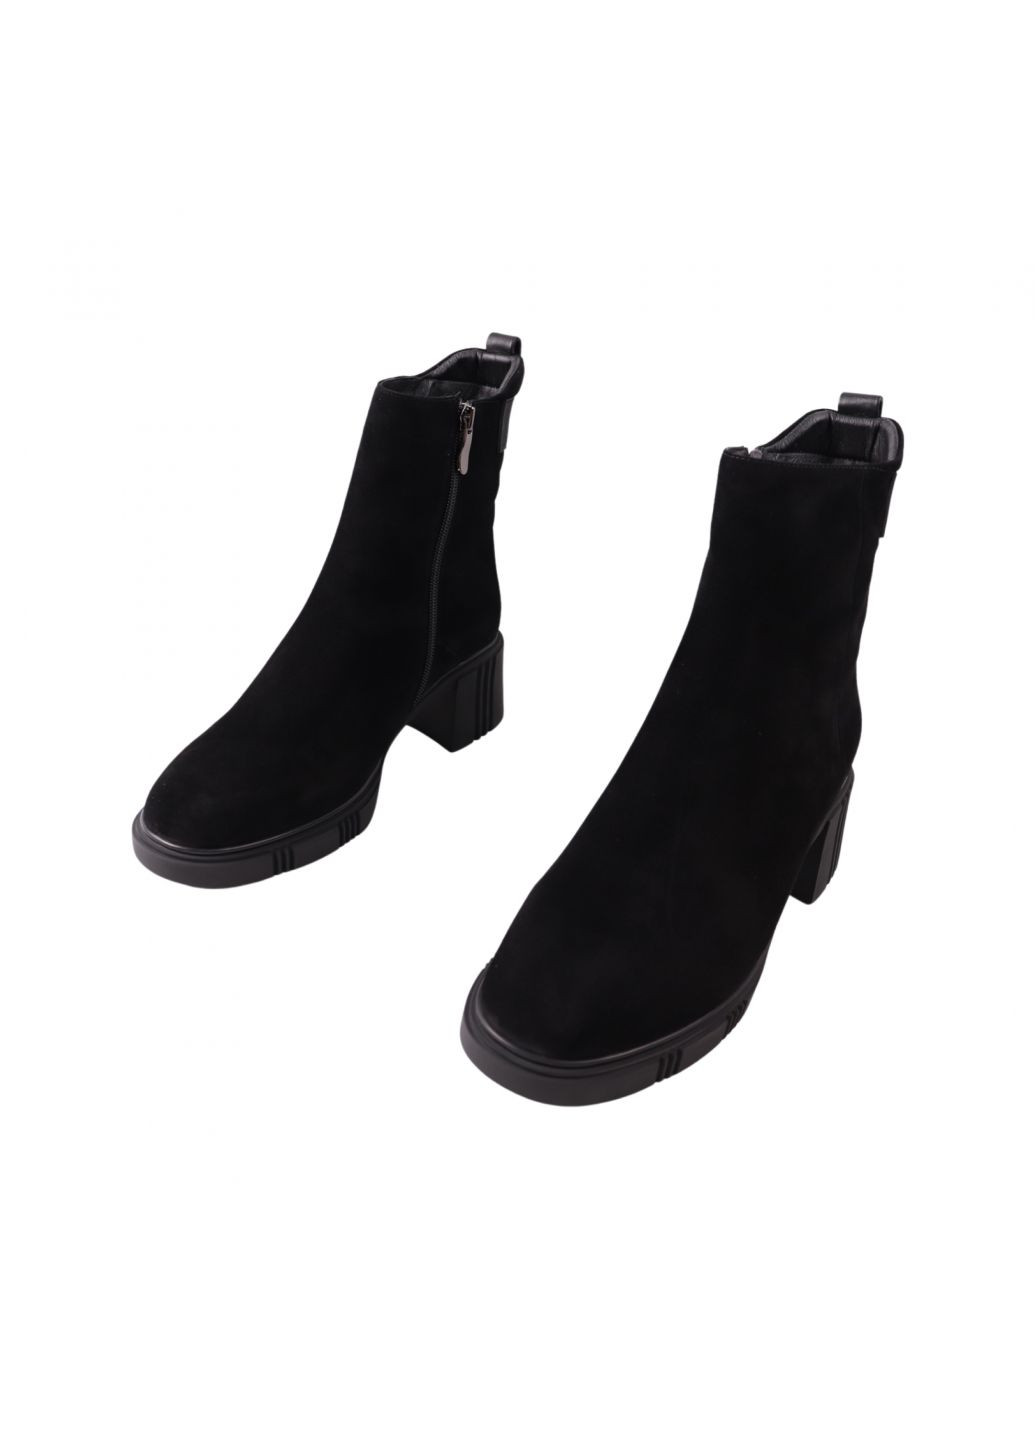 ботинки женские черные натуральная замша Polann